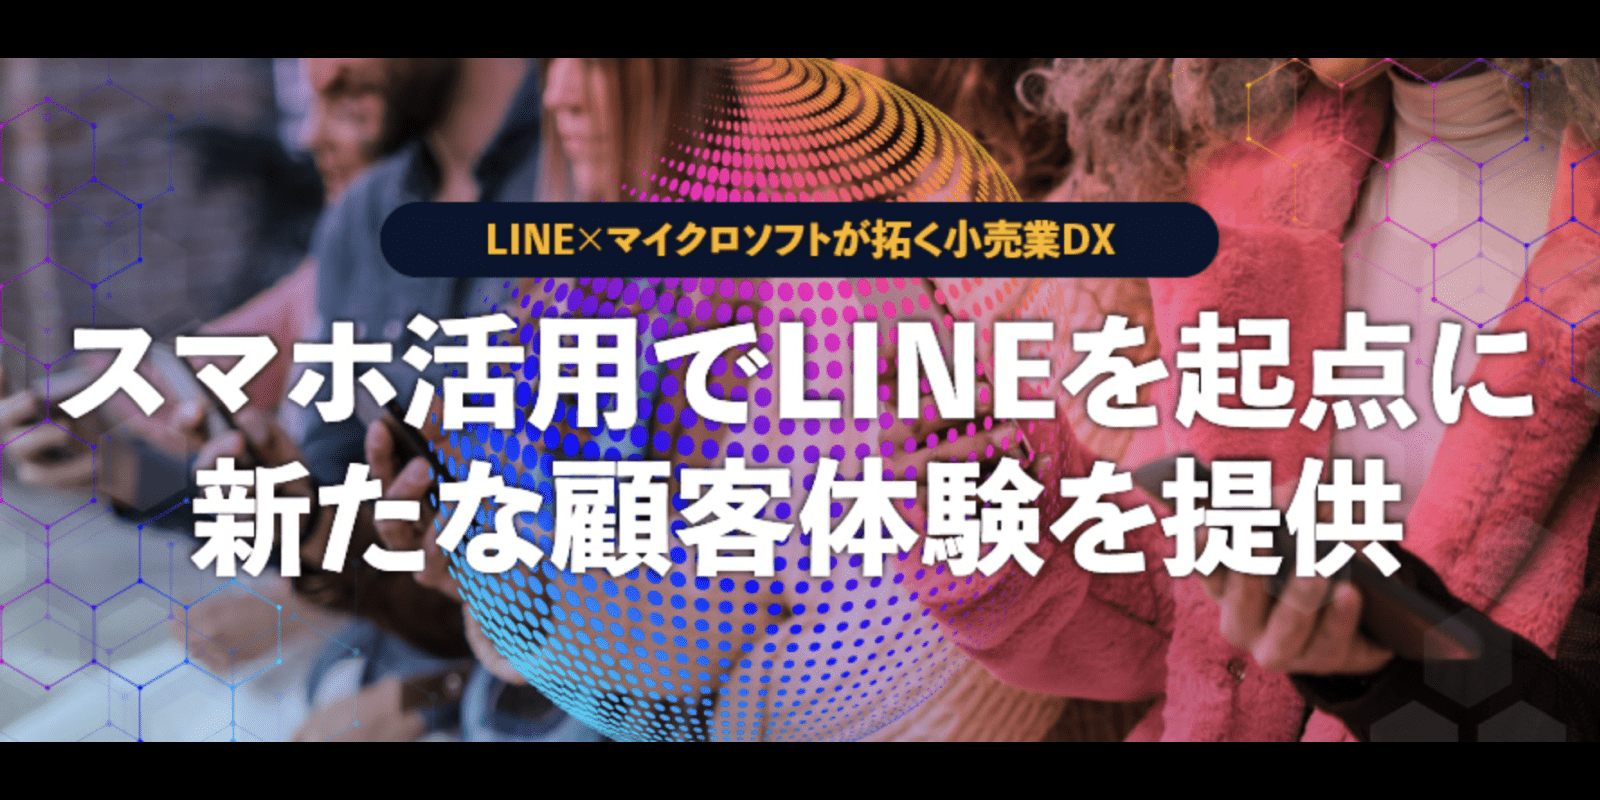 LINE × マイクロソフトが拓く小売業DXスマホ活用でLINEを起点に新たな顧客体験を提供